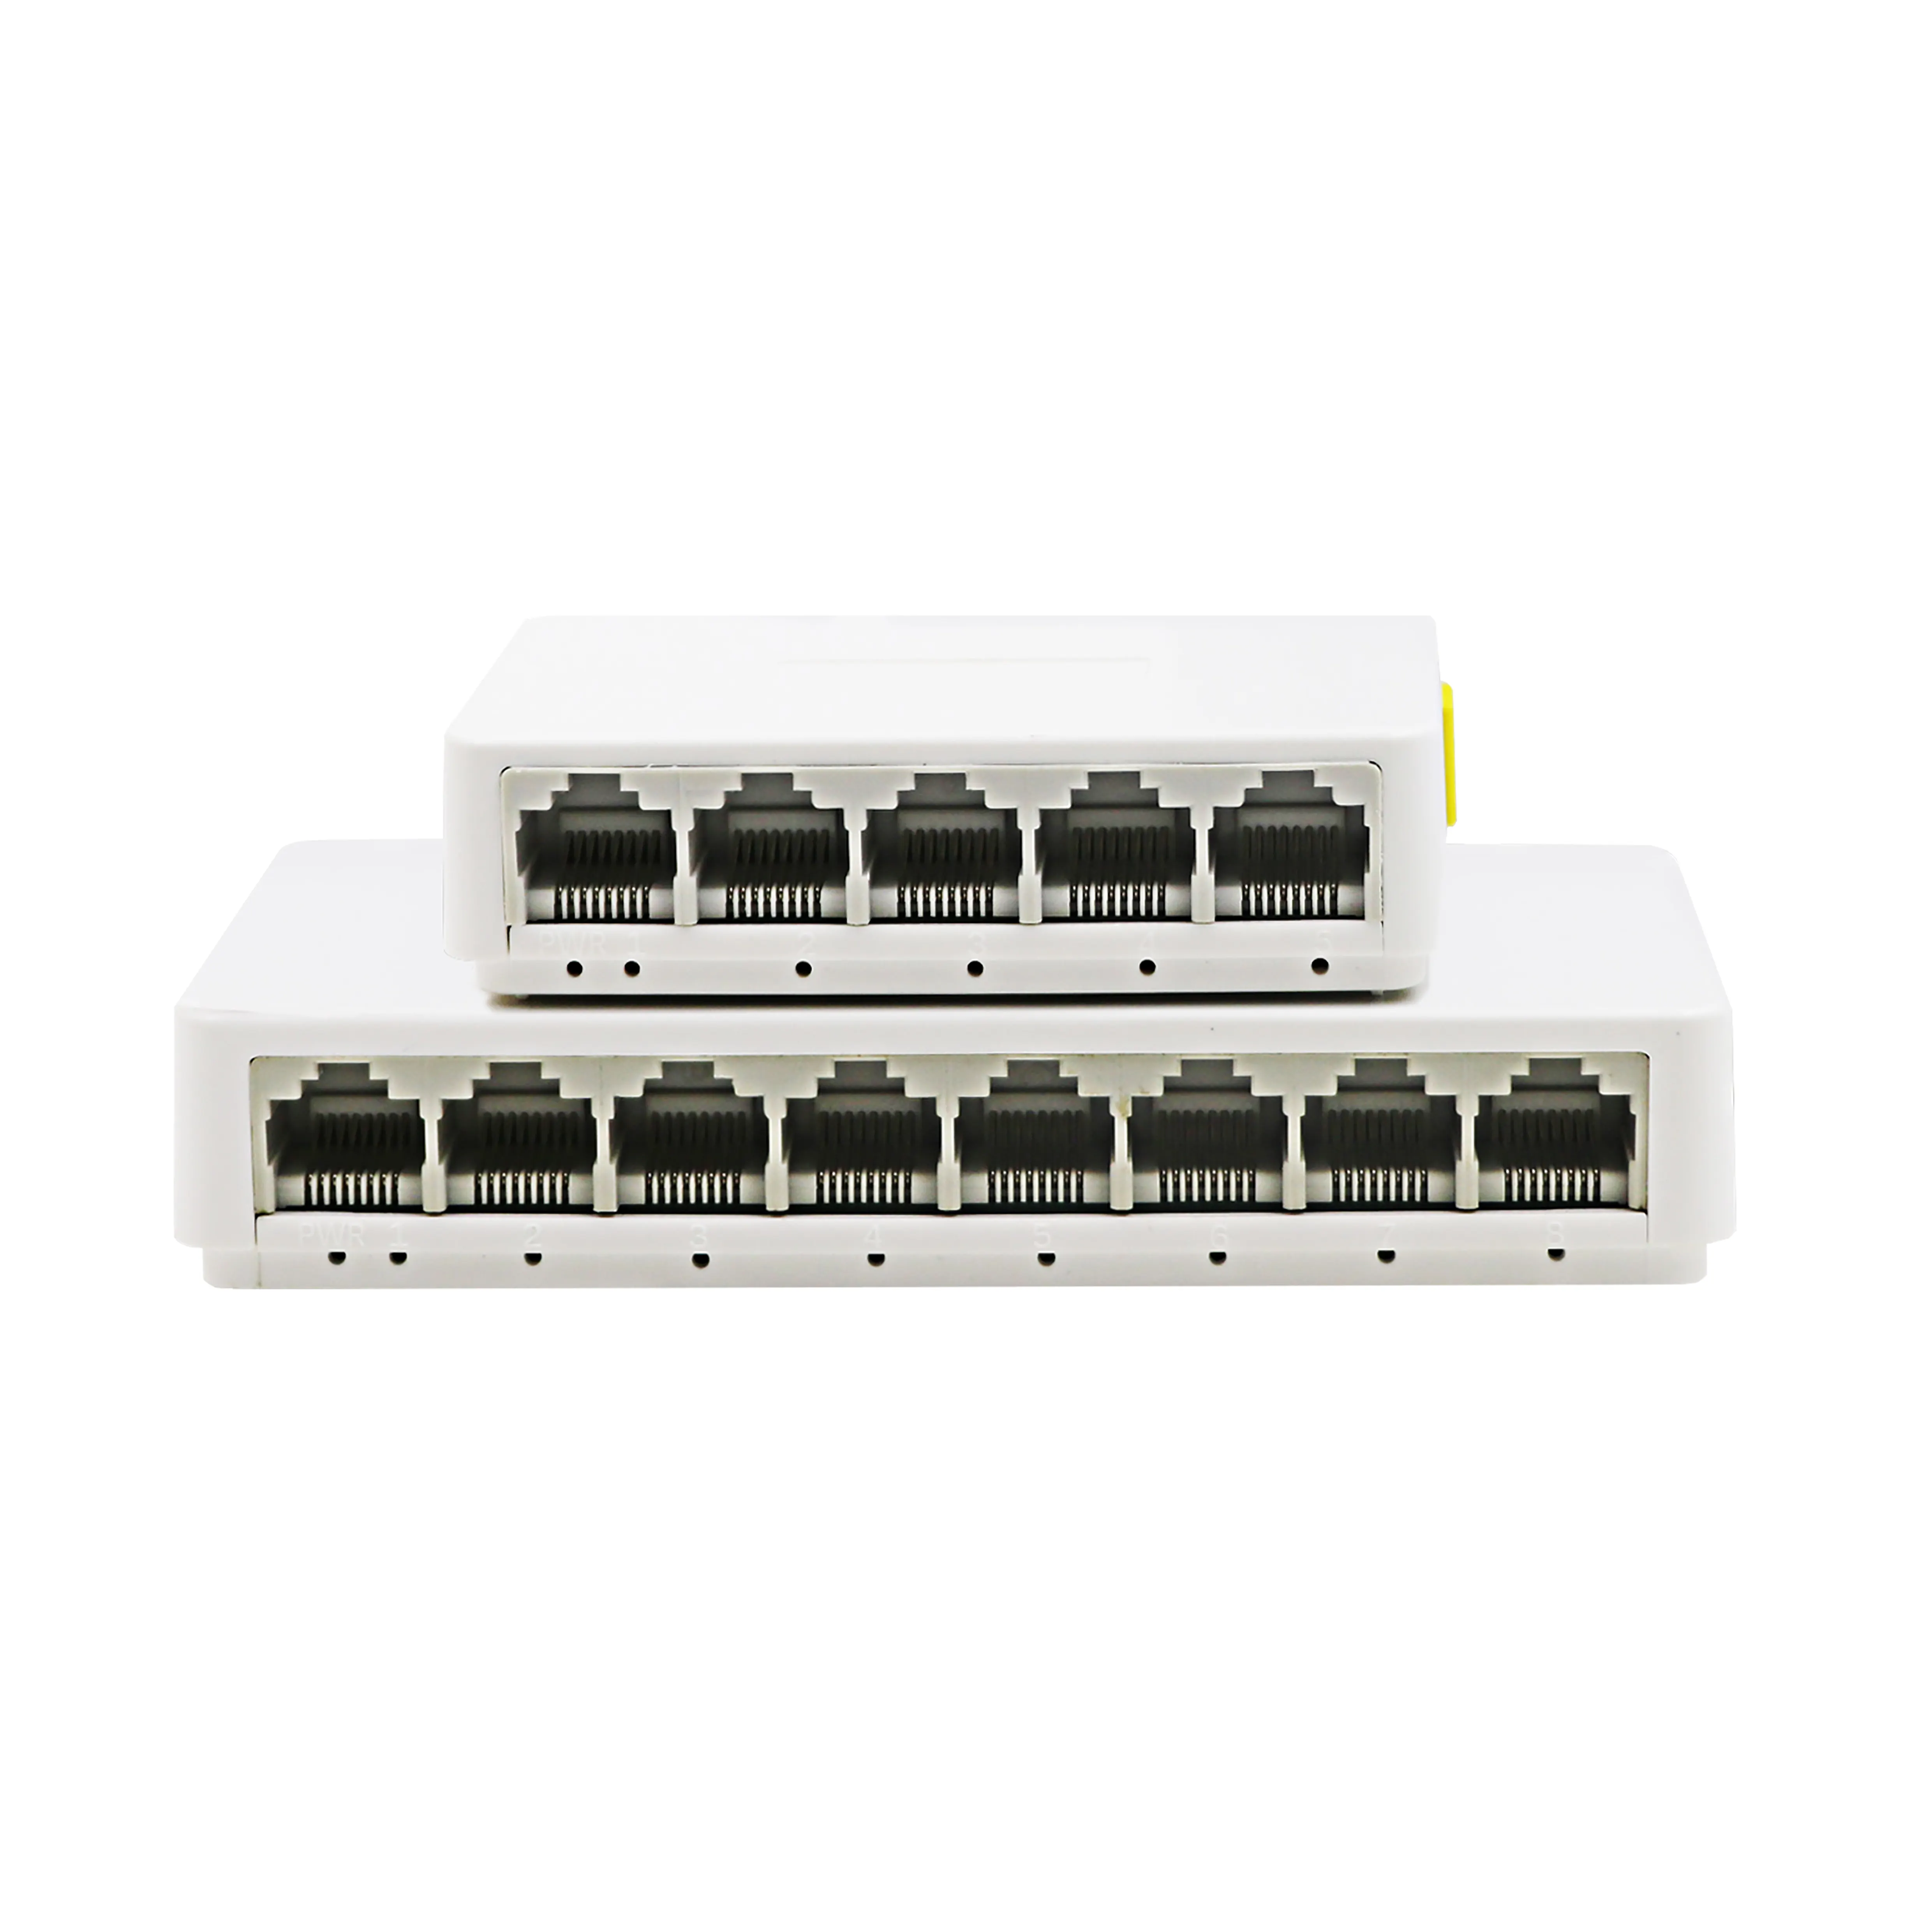 Gigabit Unmanaged Ethernet Gigabyte 1000 Mbit/s Kunststoff gehäuse 5-Port-Netzwerk-Switches